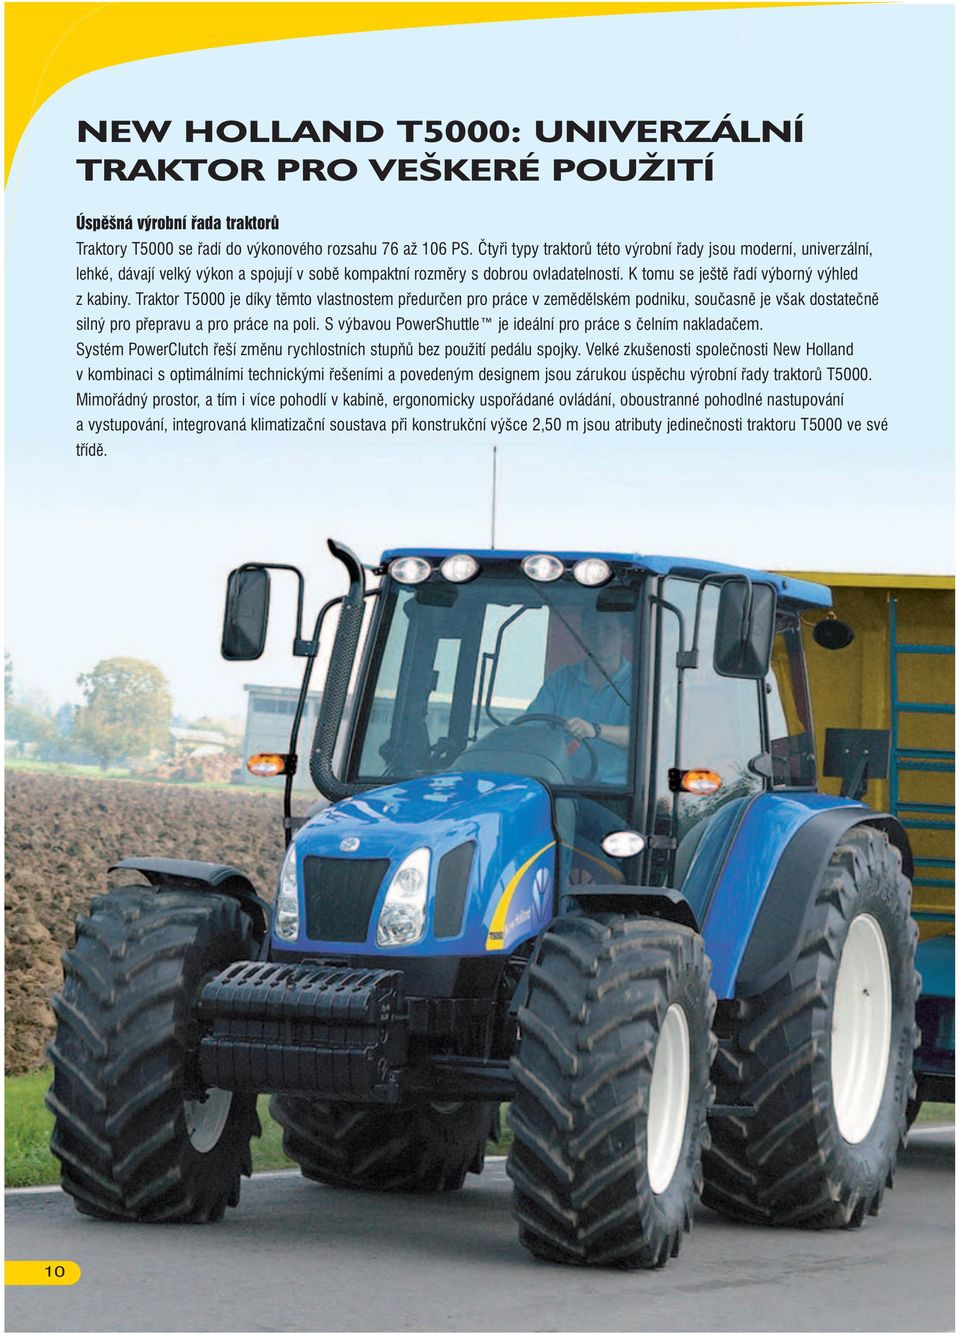 Traktor T5000 je díky těmto vlastnostem předurčen pro práce v zemědělském podniku, současně je však dostatečně silný pro přepravu a pro práce na poli.